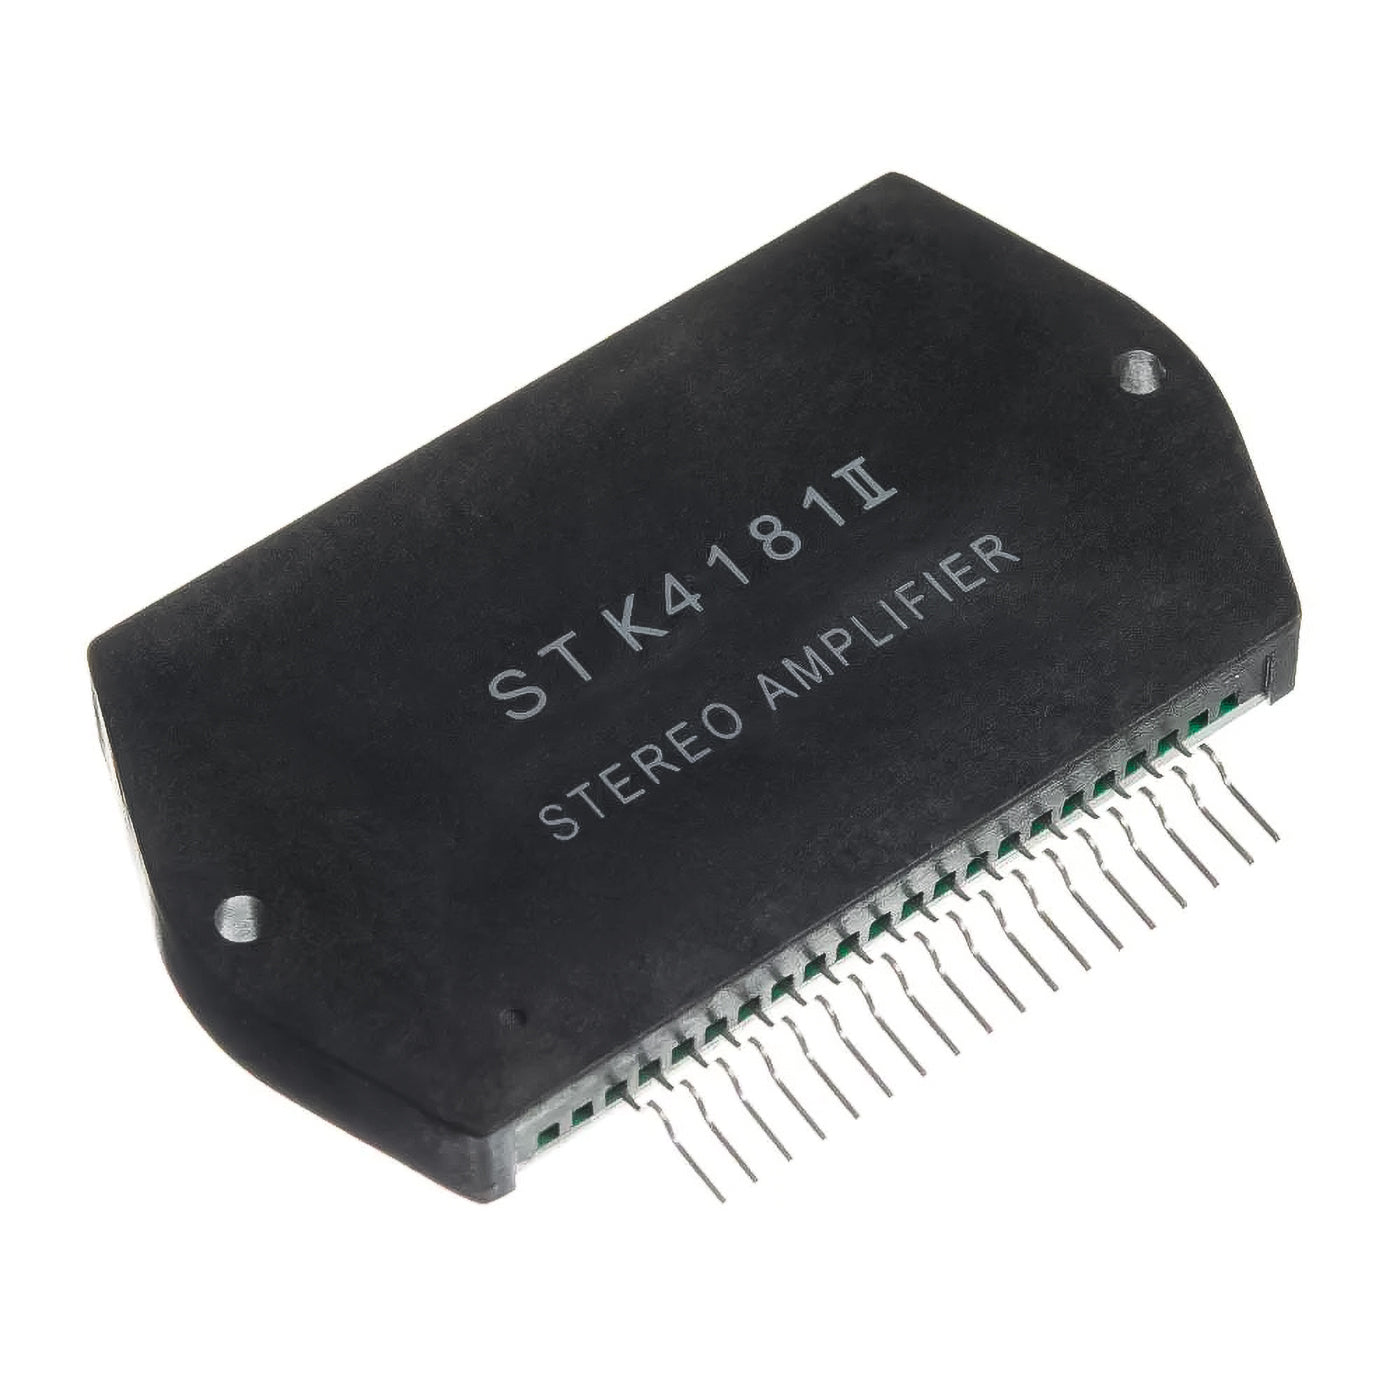 STK4181II componente elettronico, circuito integrato, transistor, stereo amplifier, 18 contatti